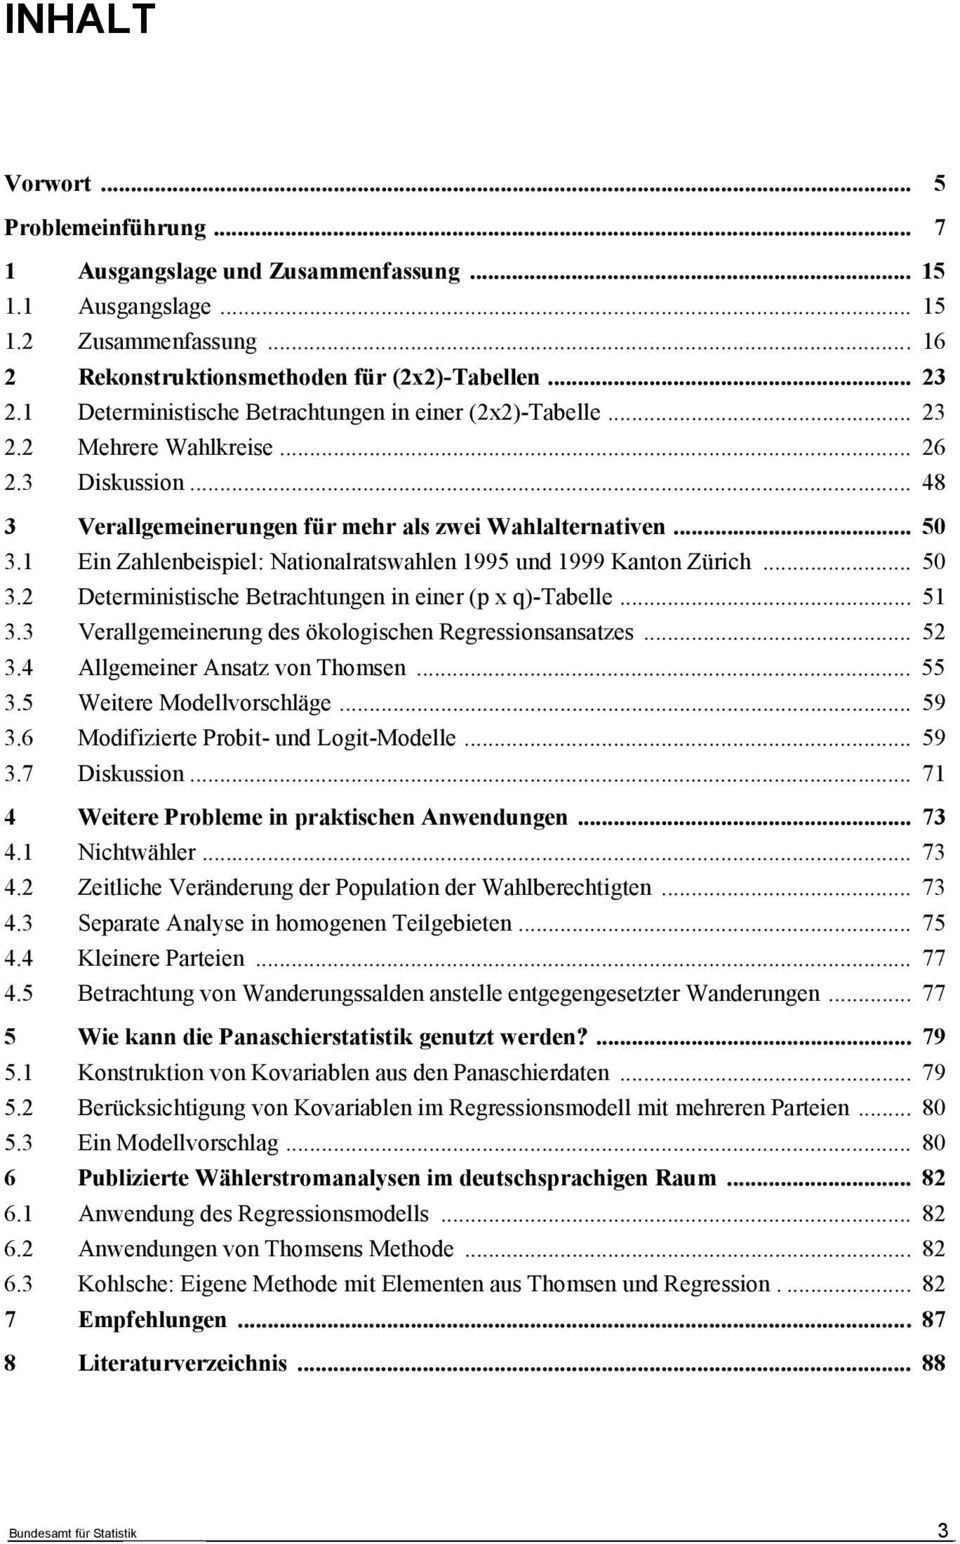 Ein Zahlenbeispiel: Naionalraswahlen 995 und 999 Kanon Zürich... 50 3. Deerminisische Berachungen in einer (p x q)-tabelle... 5 3.3 Verallgemeinerung des ökologischen Regressionsansazes... 5 3.4 Allgemeiner Ansaz von Thomsen.